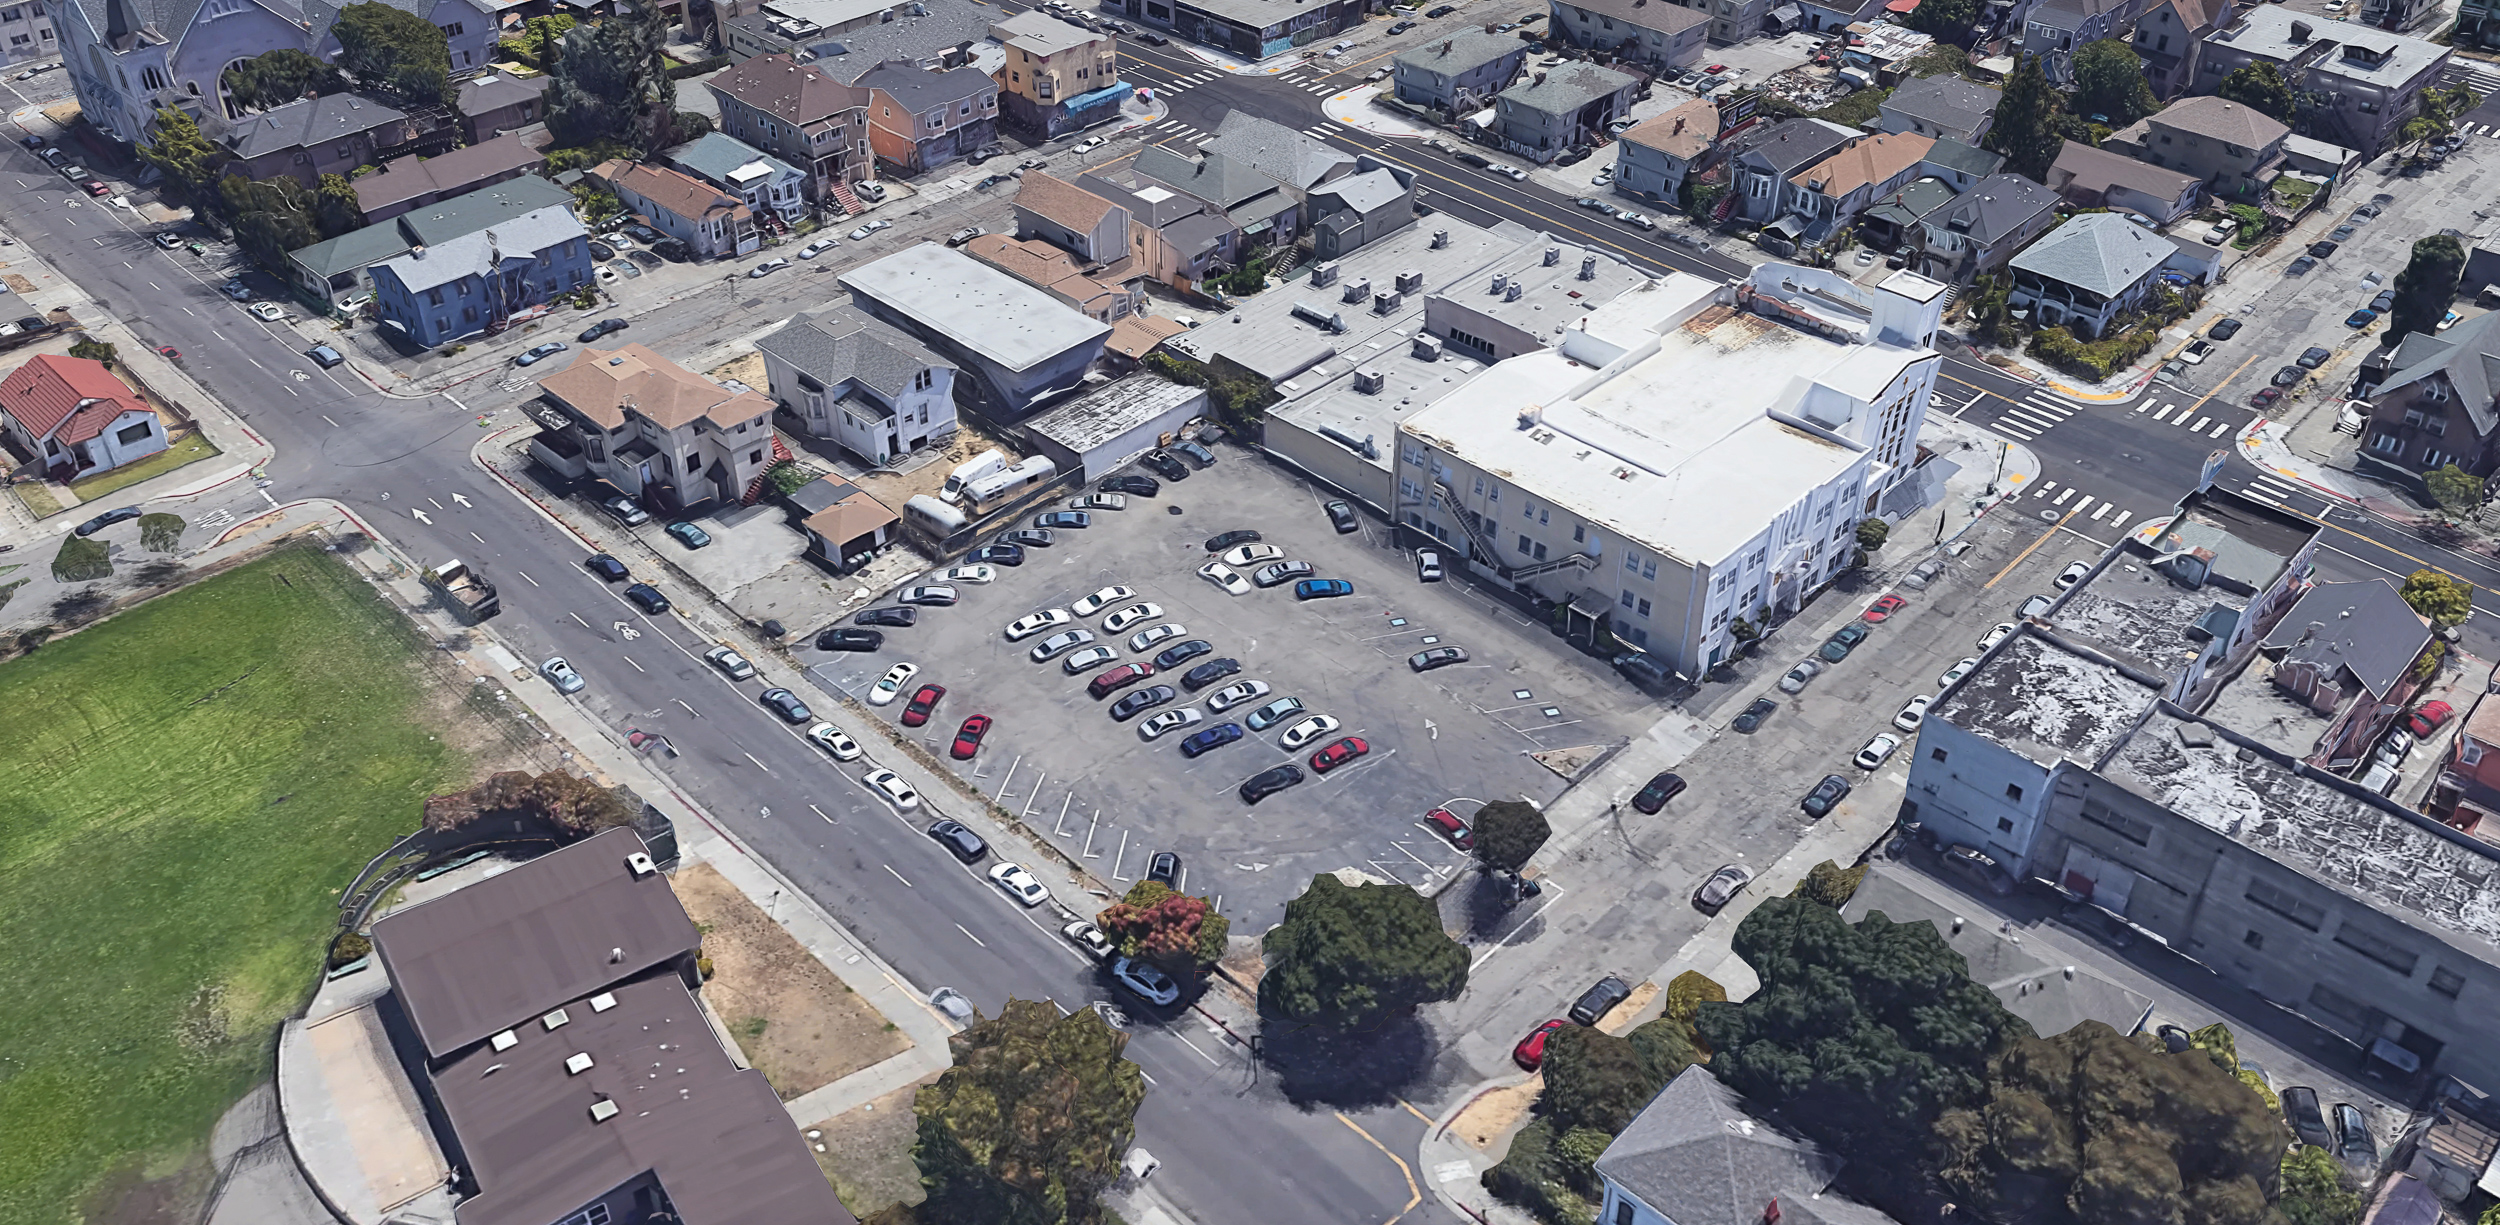 1003 East 15th Street, image via Google Satellite